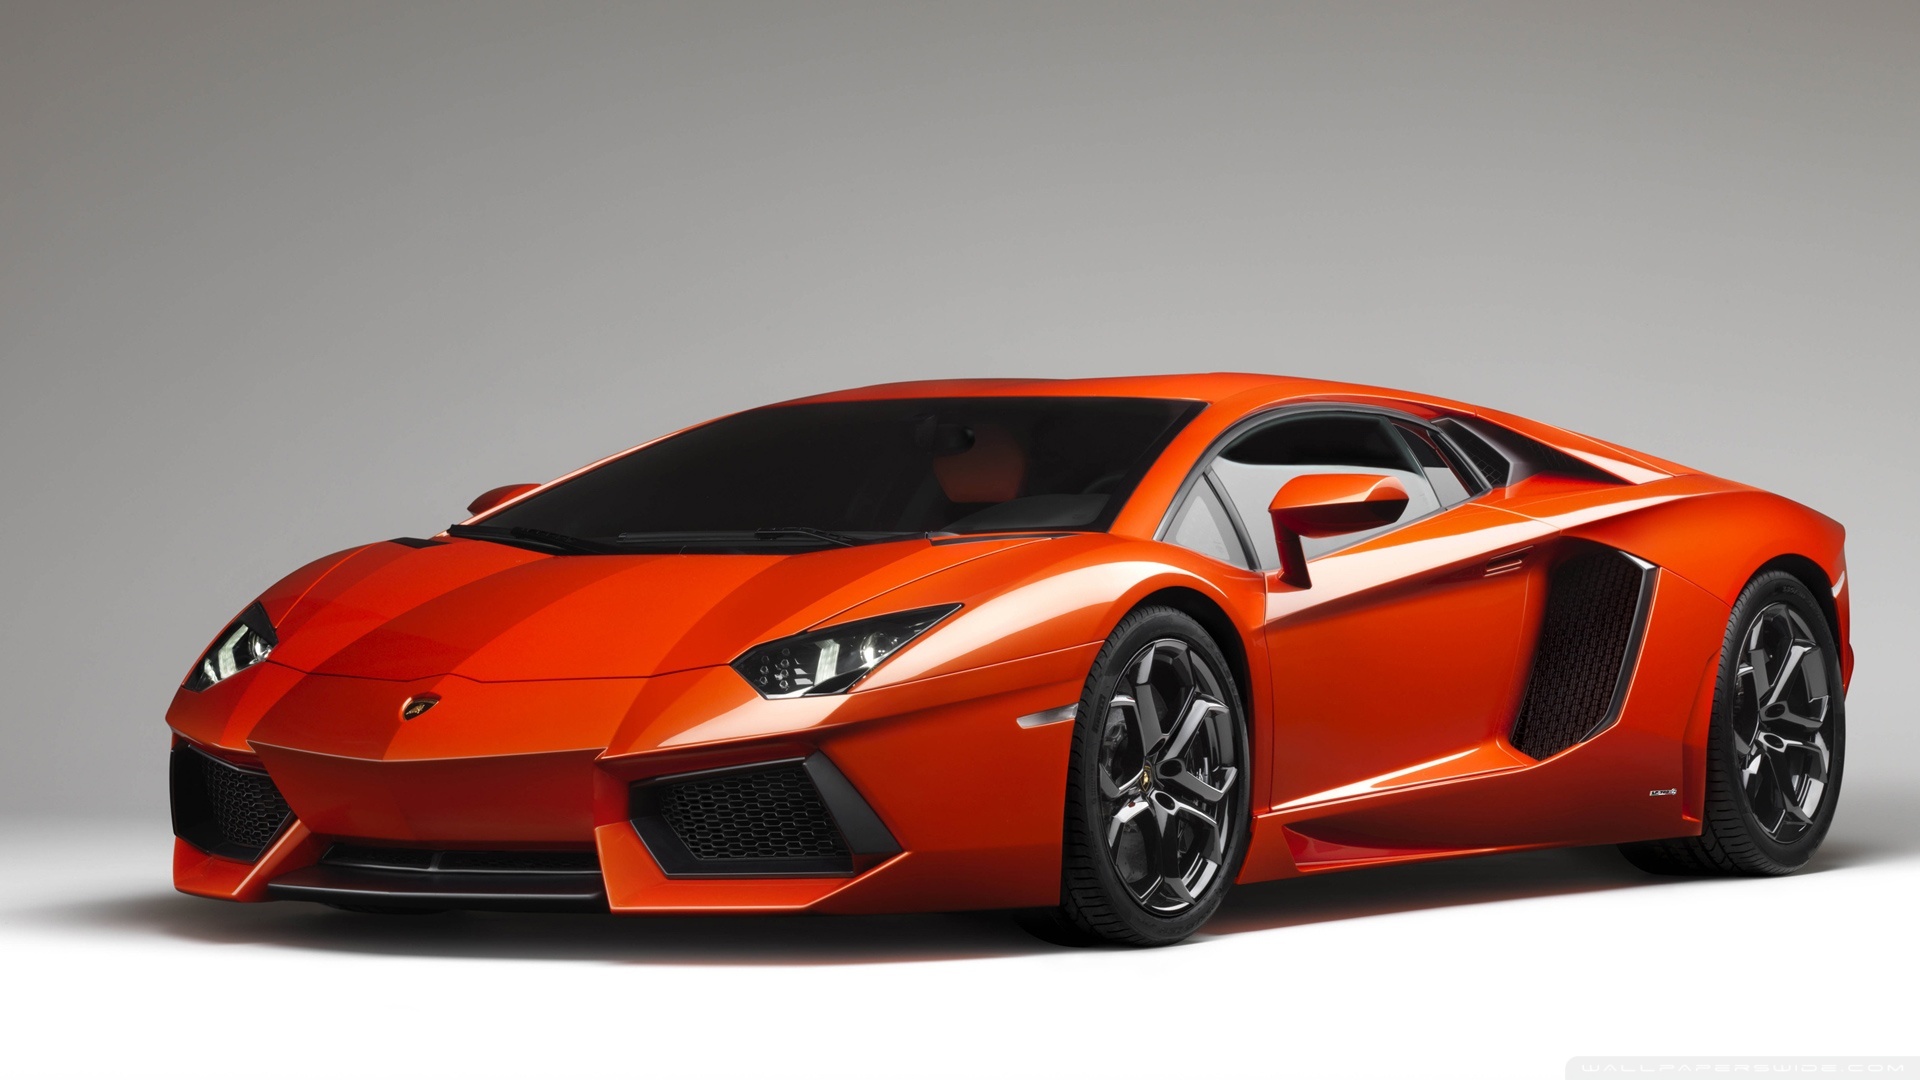 Download 21 4k-car-wallpaper 4K-Lamborghini-Aventador-Lamborghini-Sports-Car-Wallpaper-.jpg